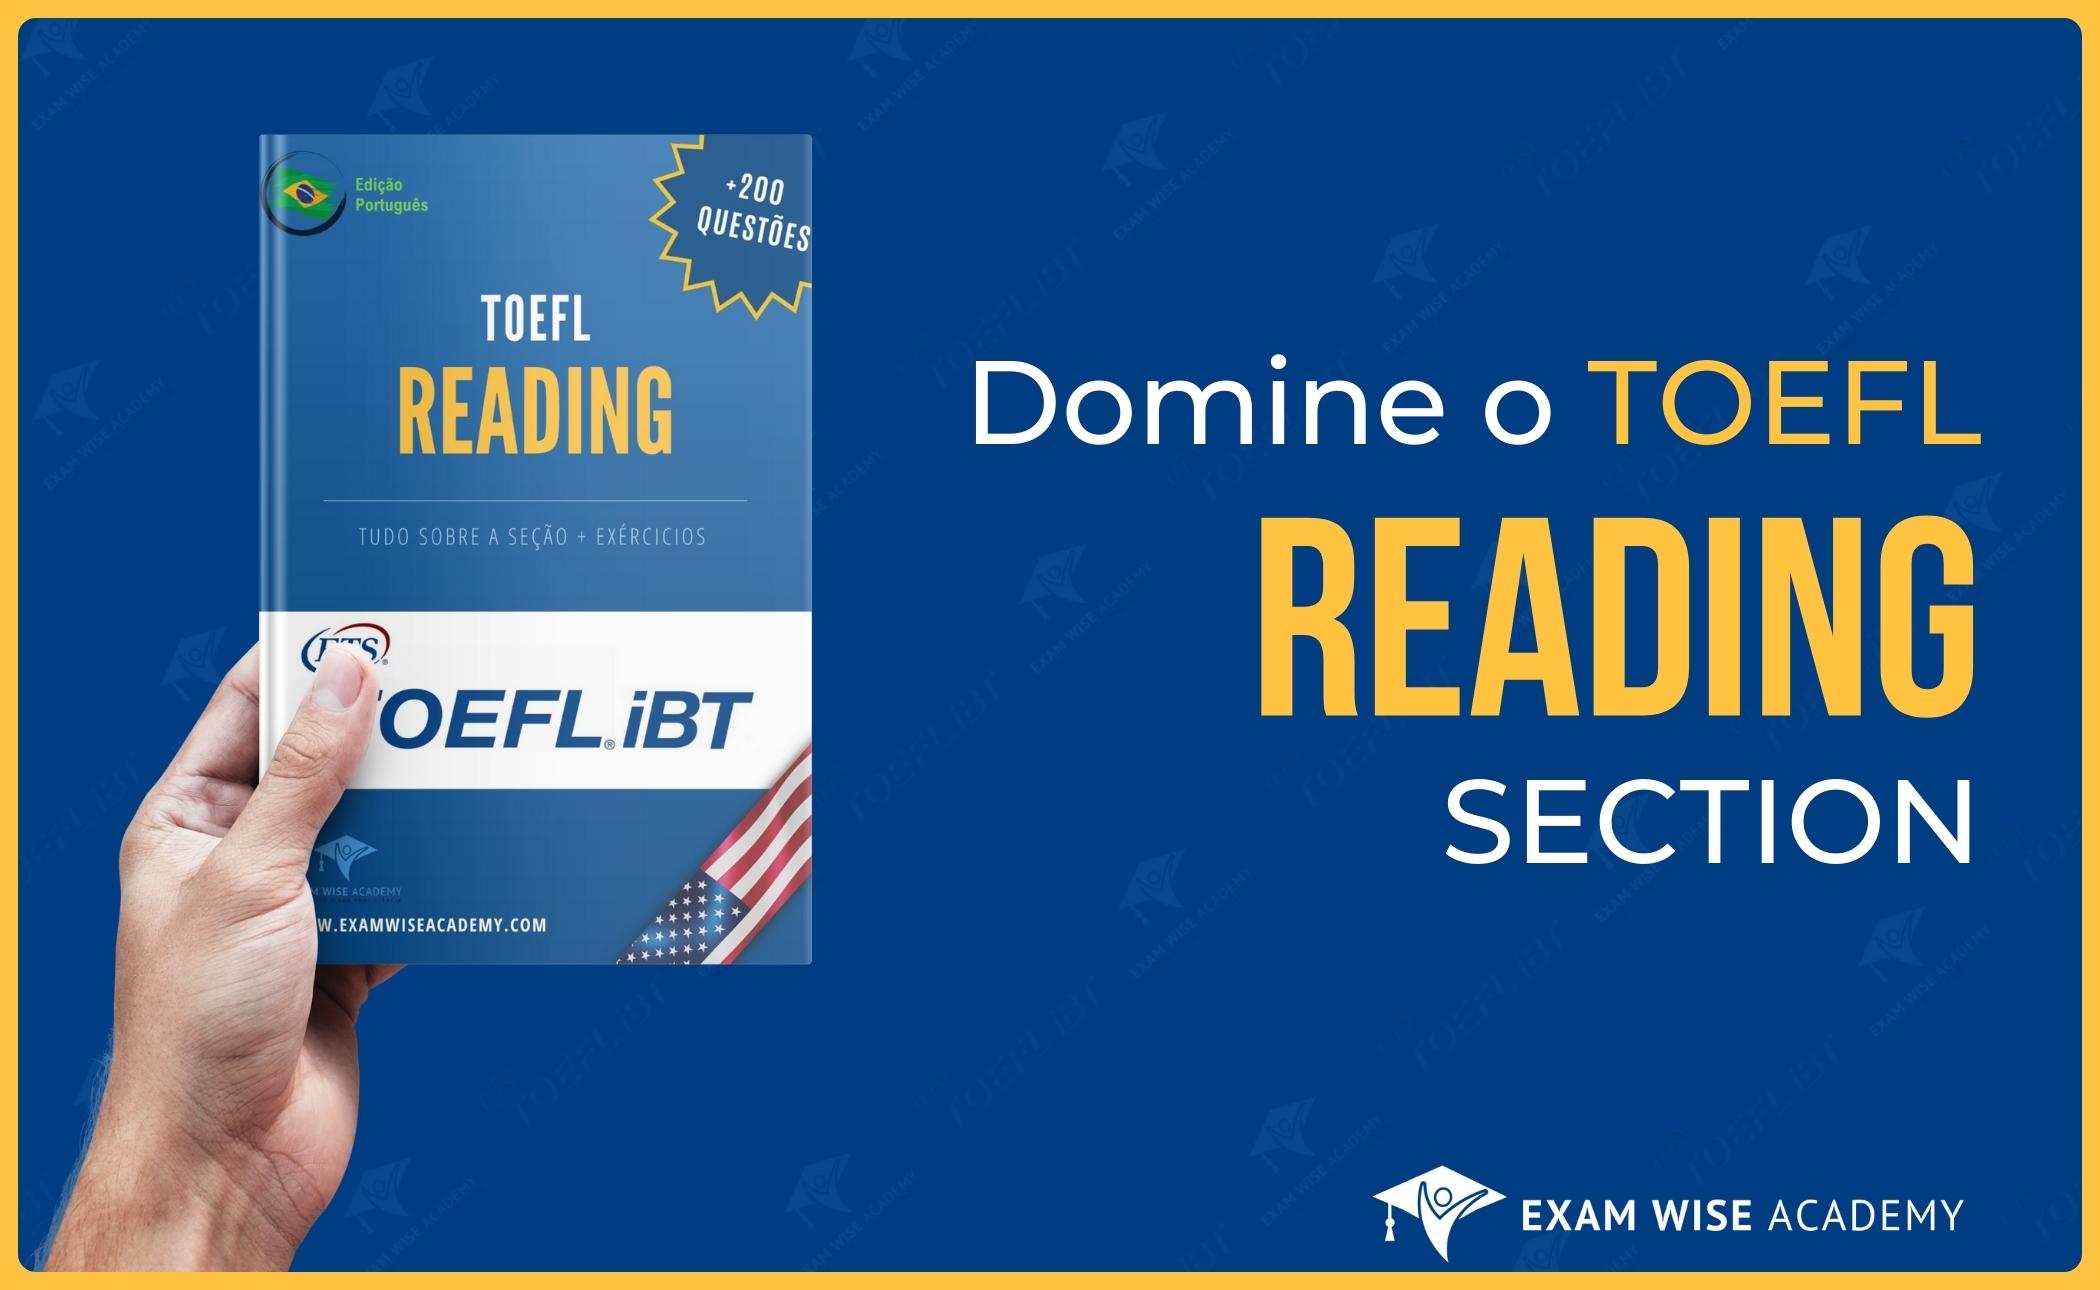 Domine o TOEFL: Pacote Speaking